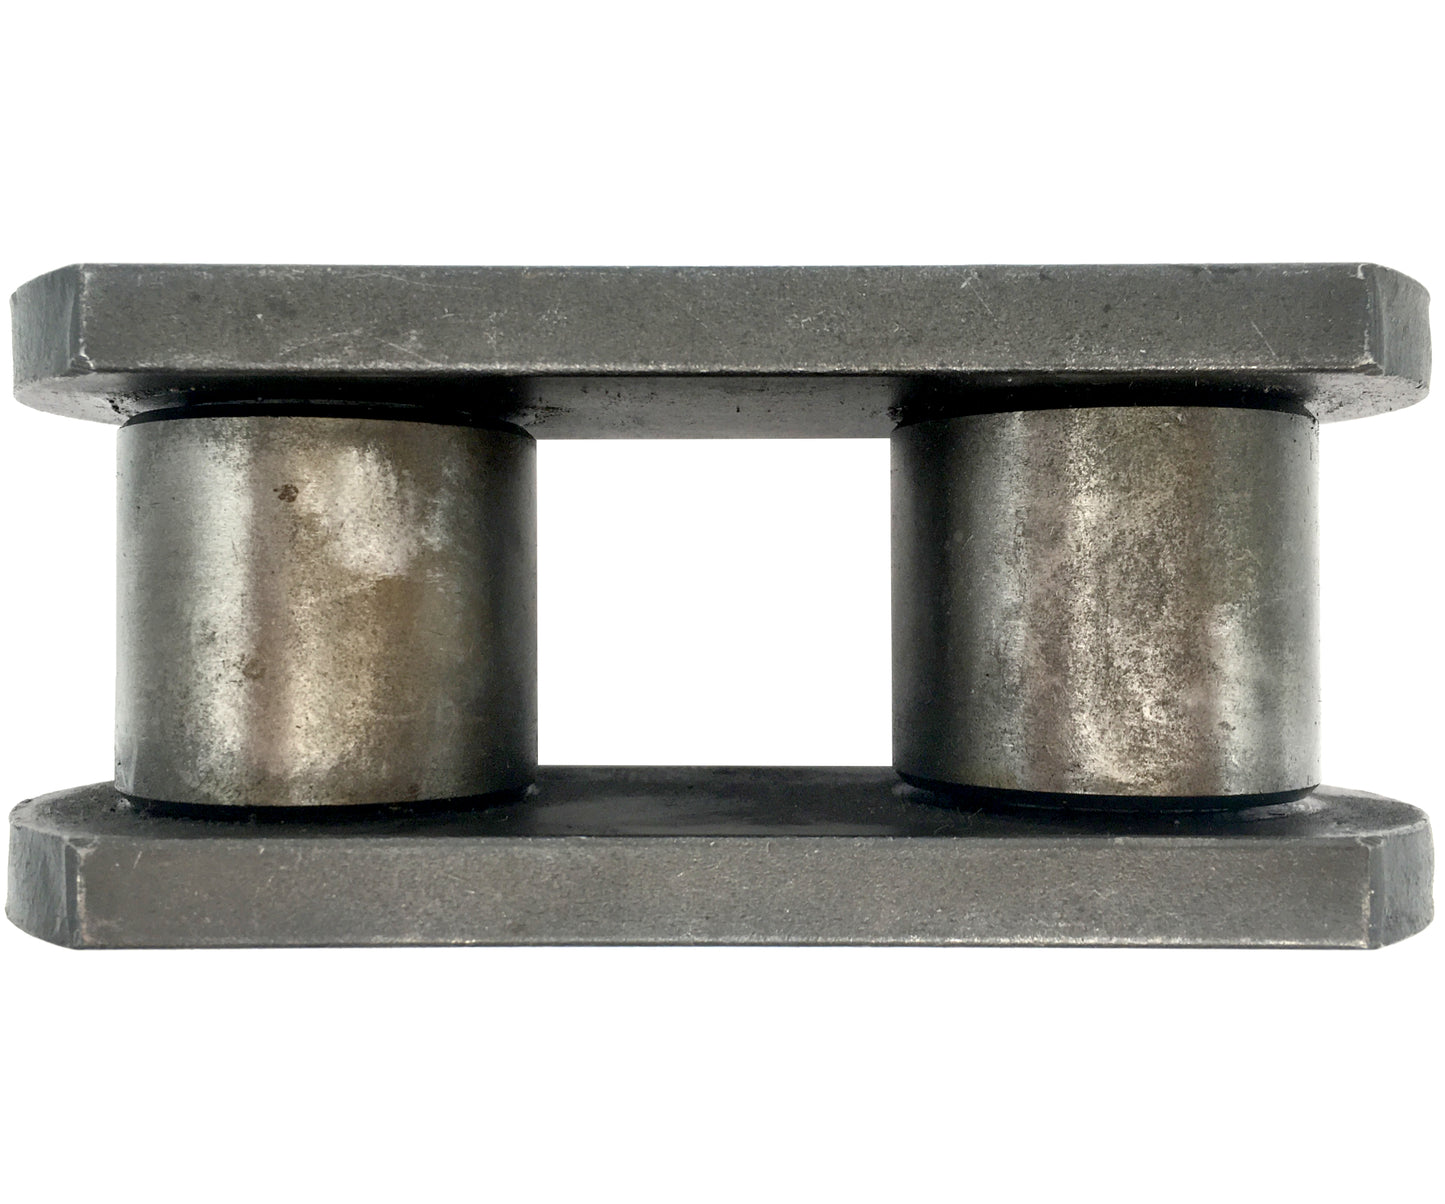 Maillon de rouleau de chaîne de tranchée, convient aux chaînes avec pas de 3,067" - 135-404, 3067RL